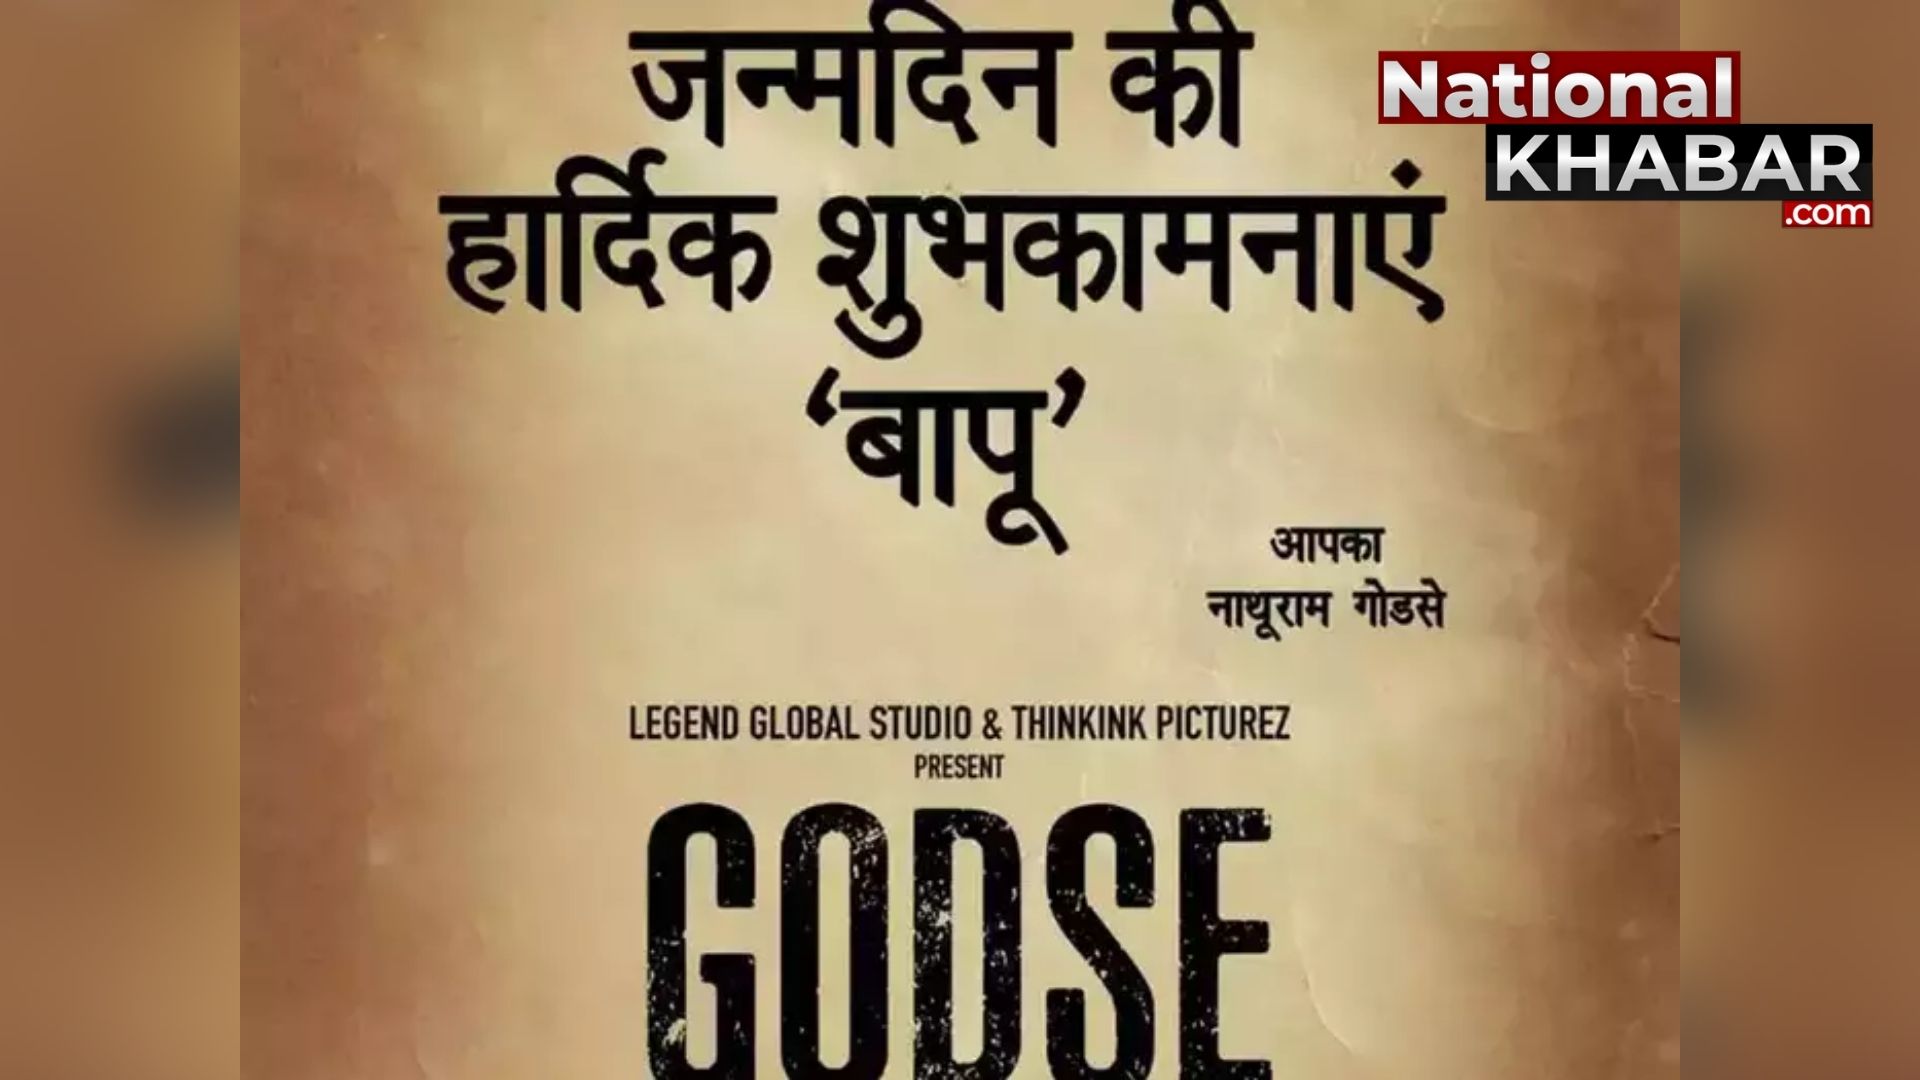 महात्मा गांधी के हत्यारे पर आधारित फिल्म 'गोडसे' को महेश मांजरेकर करेंगे डायरेक्ट